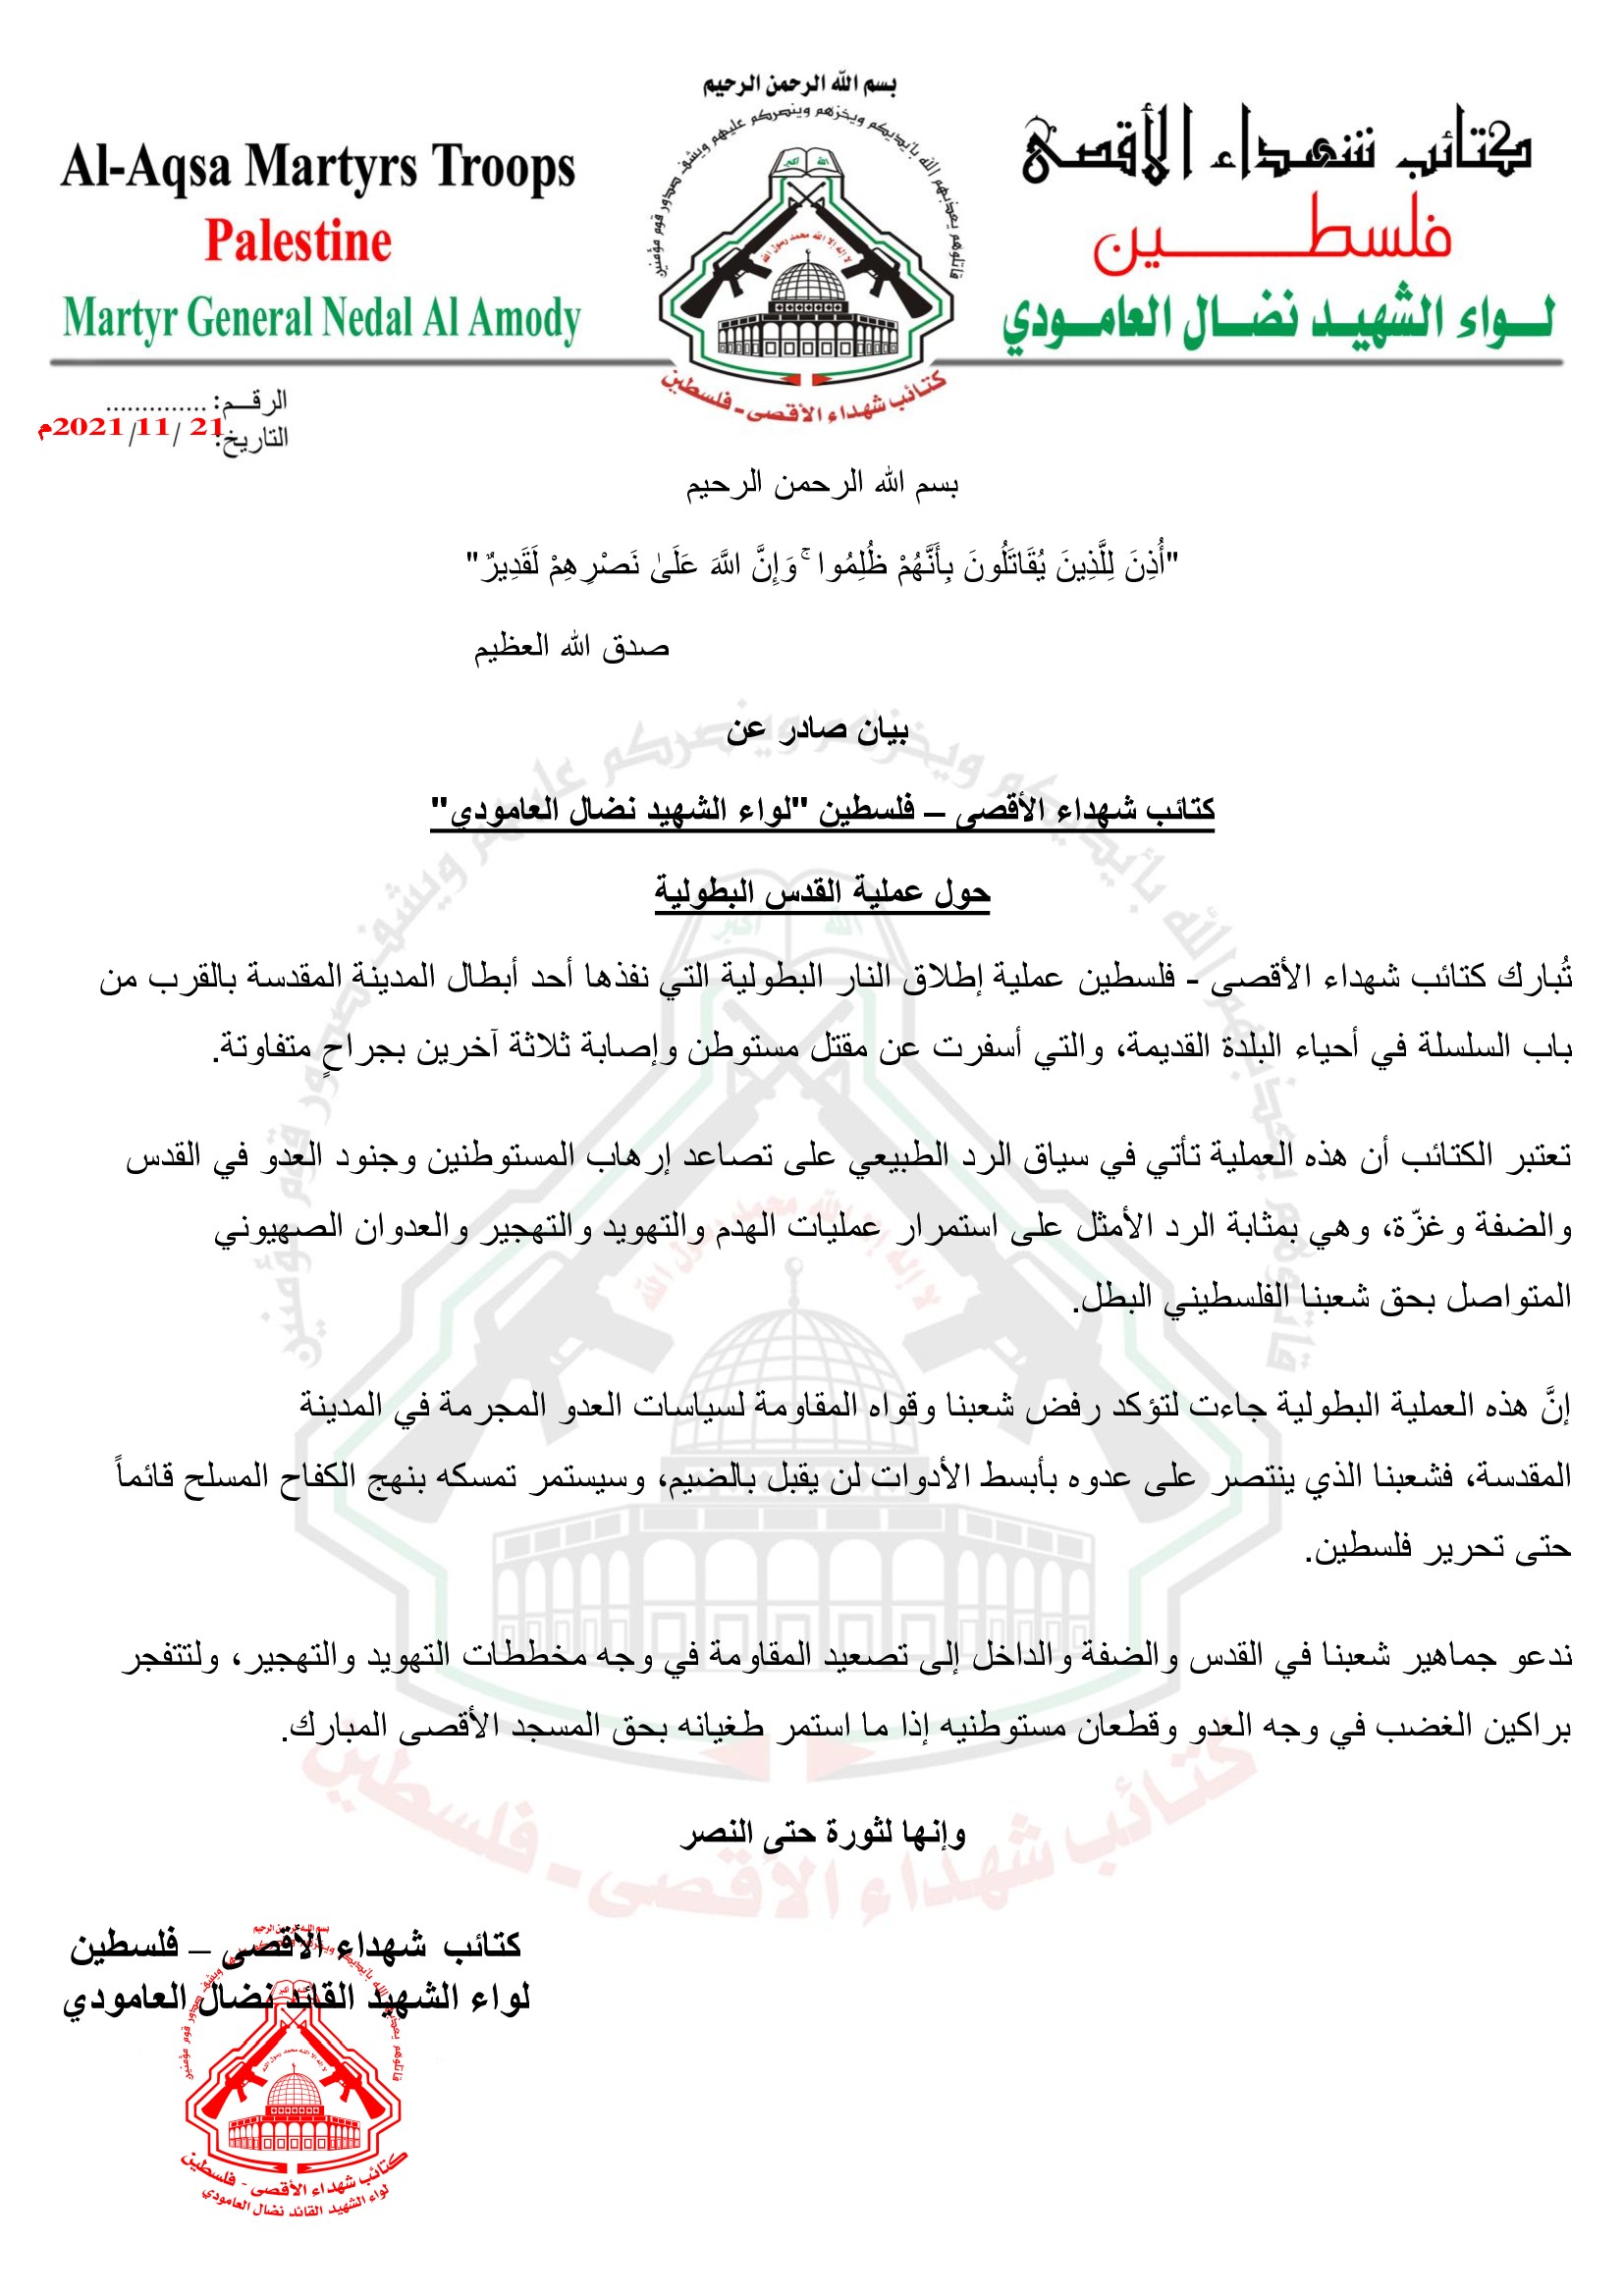 الجناح العسكري لـ"فتح" يُبارك عملية إطلاق النار بالقدس ويدعو لتصعيد المقاومة